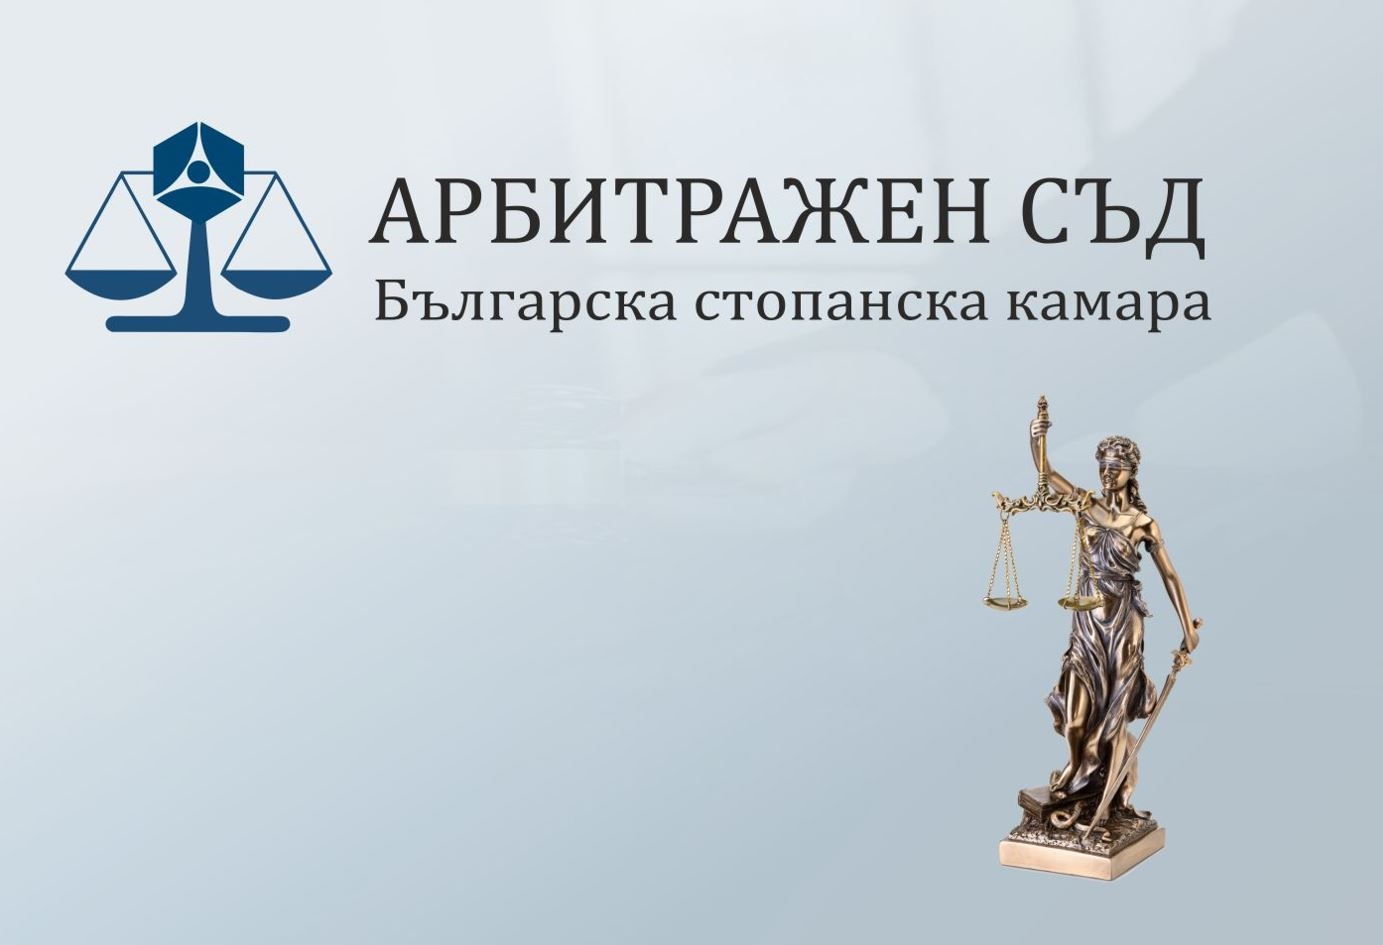 Арбитражният съд при БСК решава граждански и търговски спорове